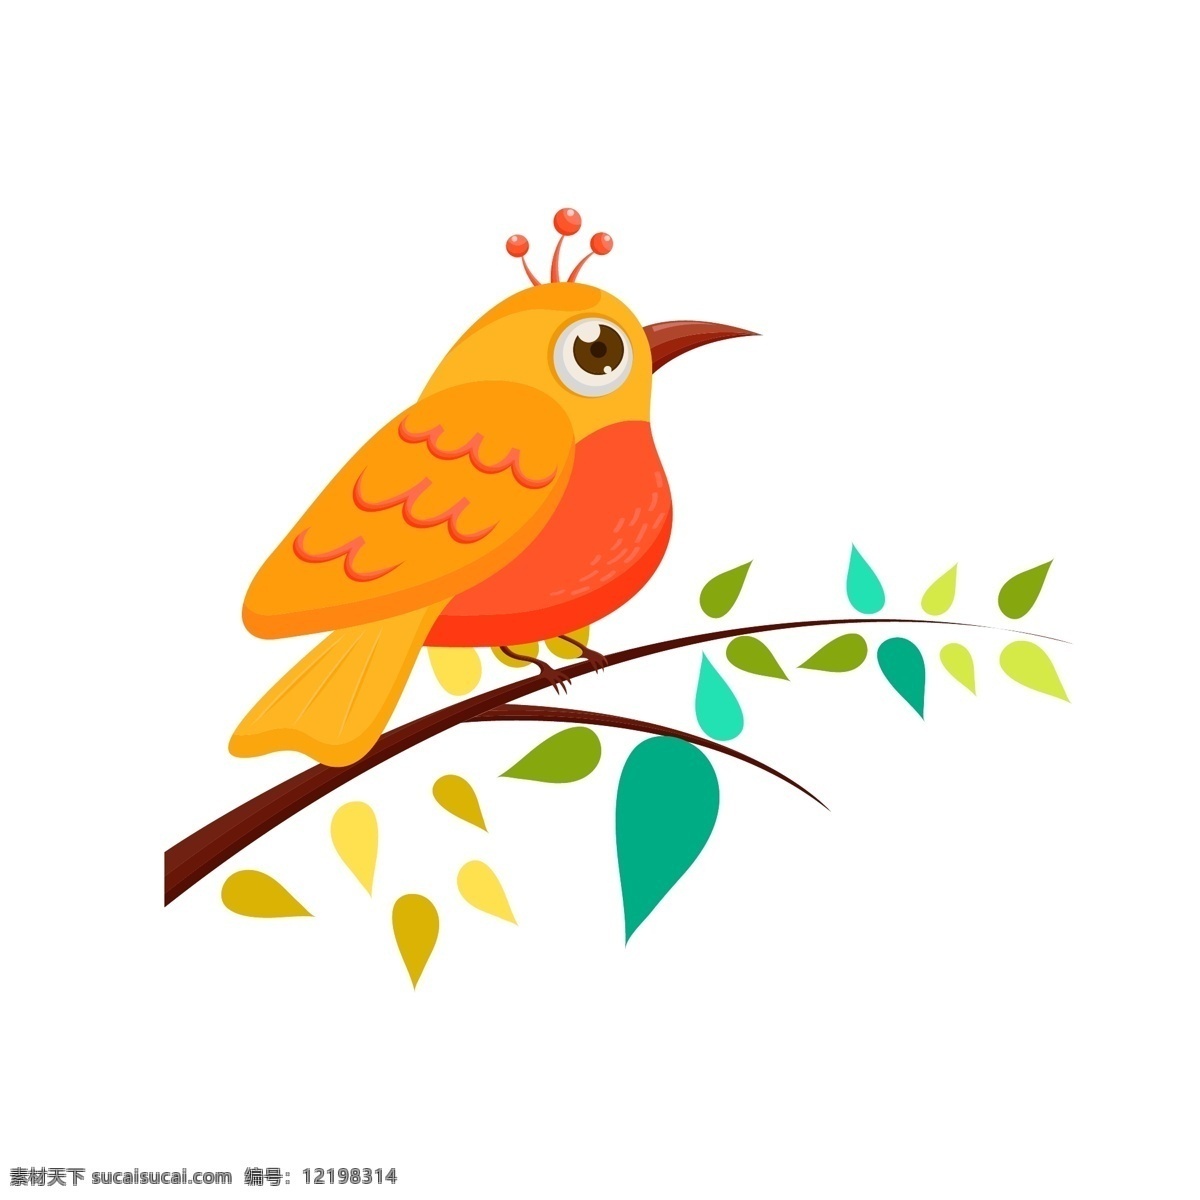 彩色 手绘 小鸟 树枝 彩色手绘小鸟 小鸟手绘 小鸟插画 小鸟树枝